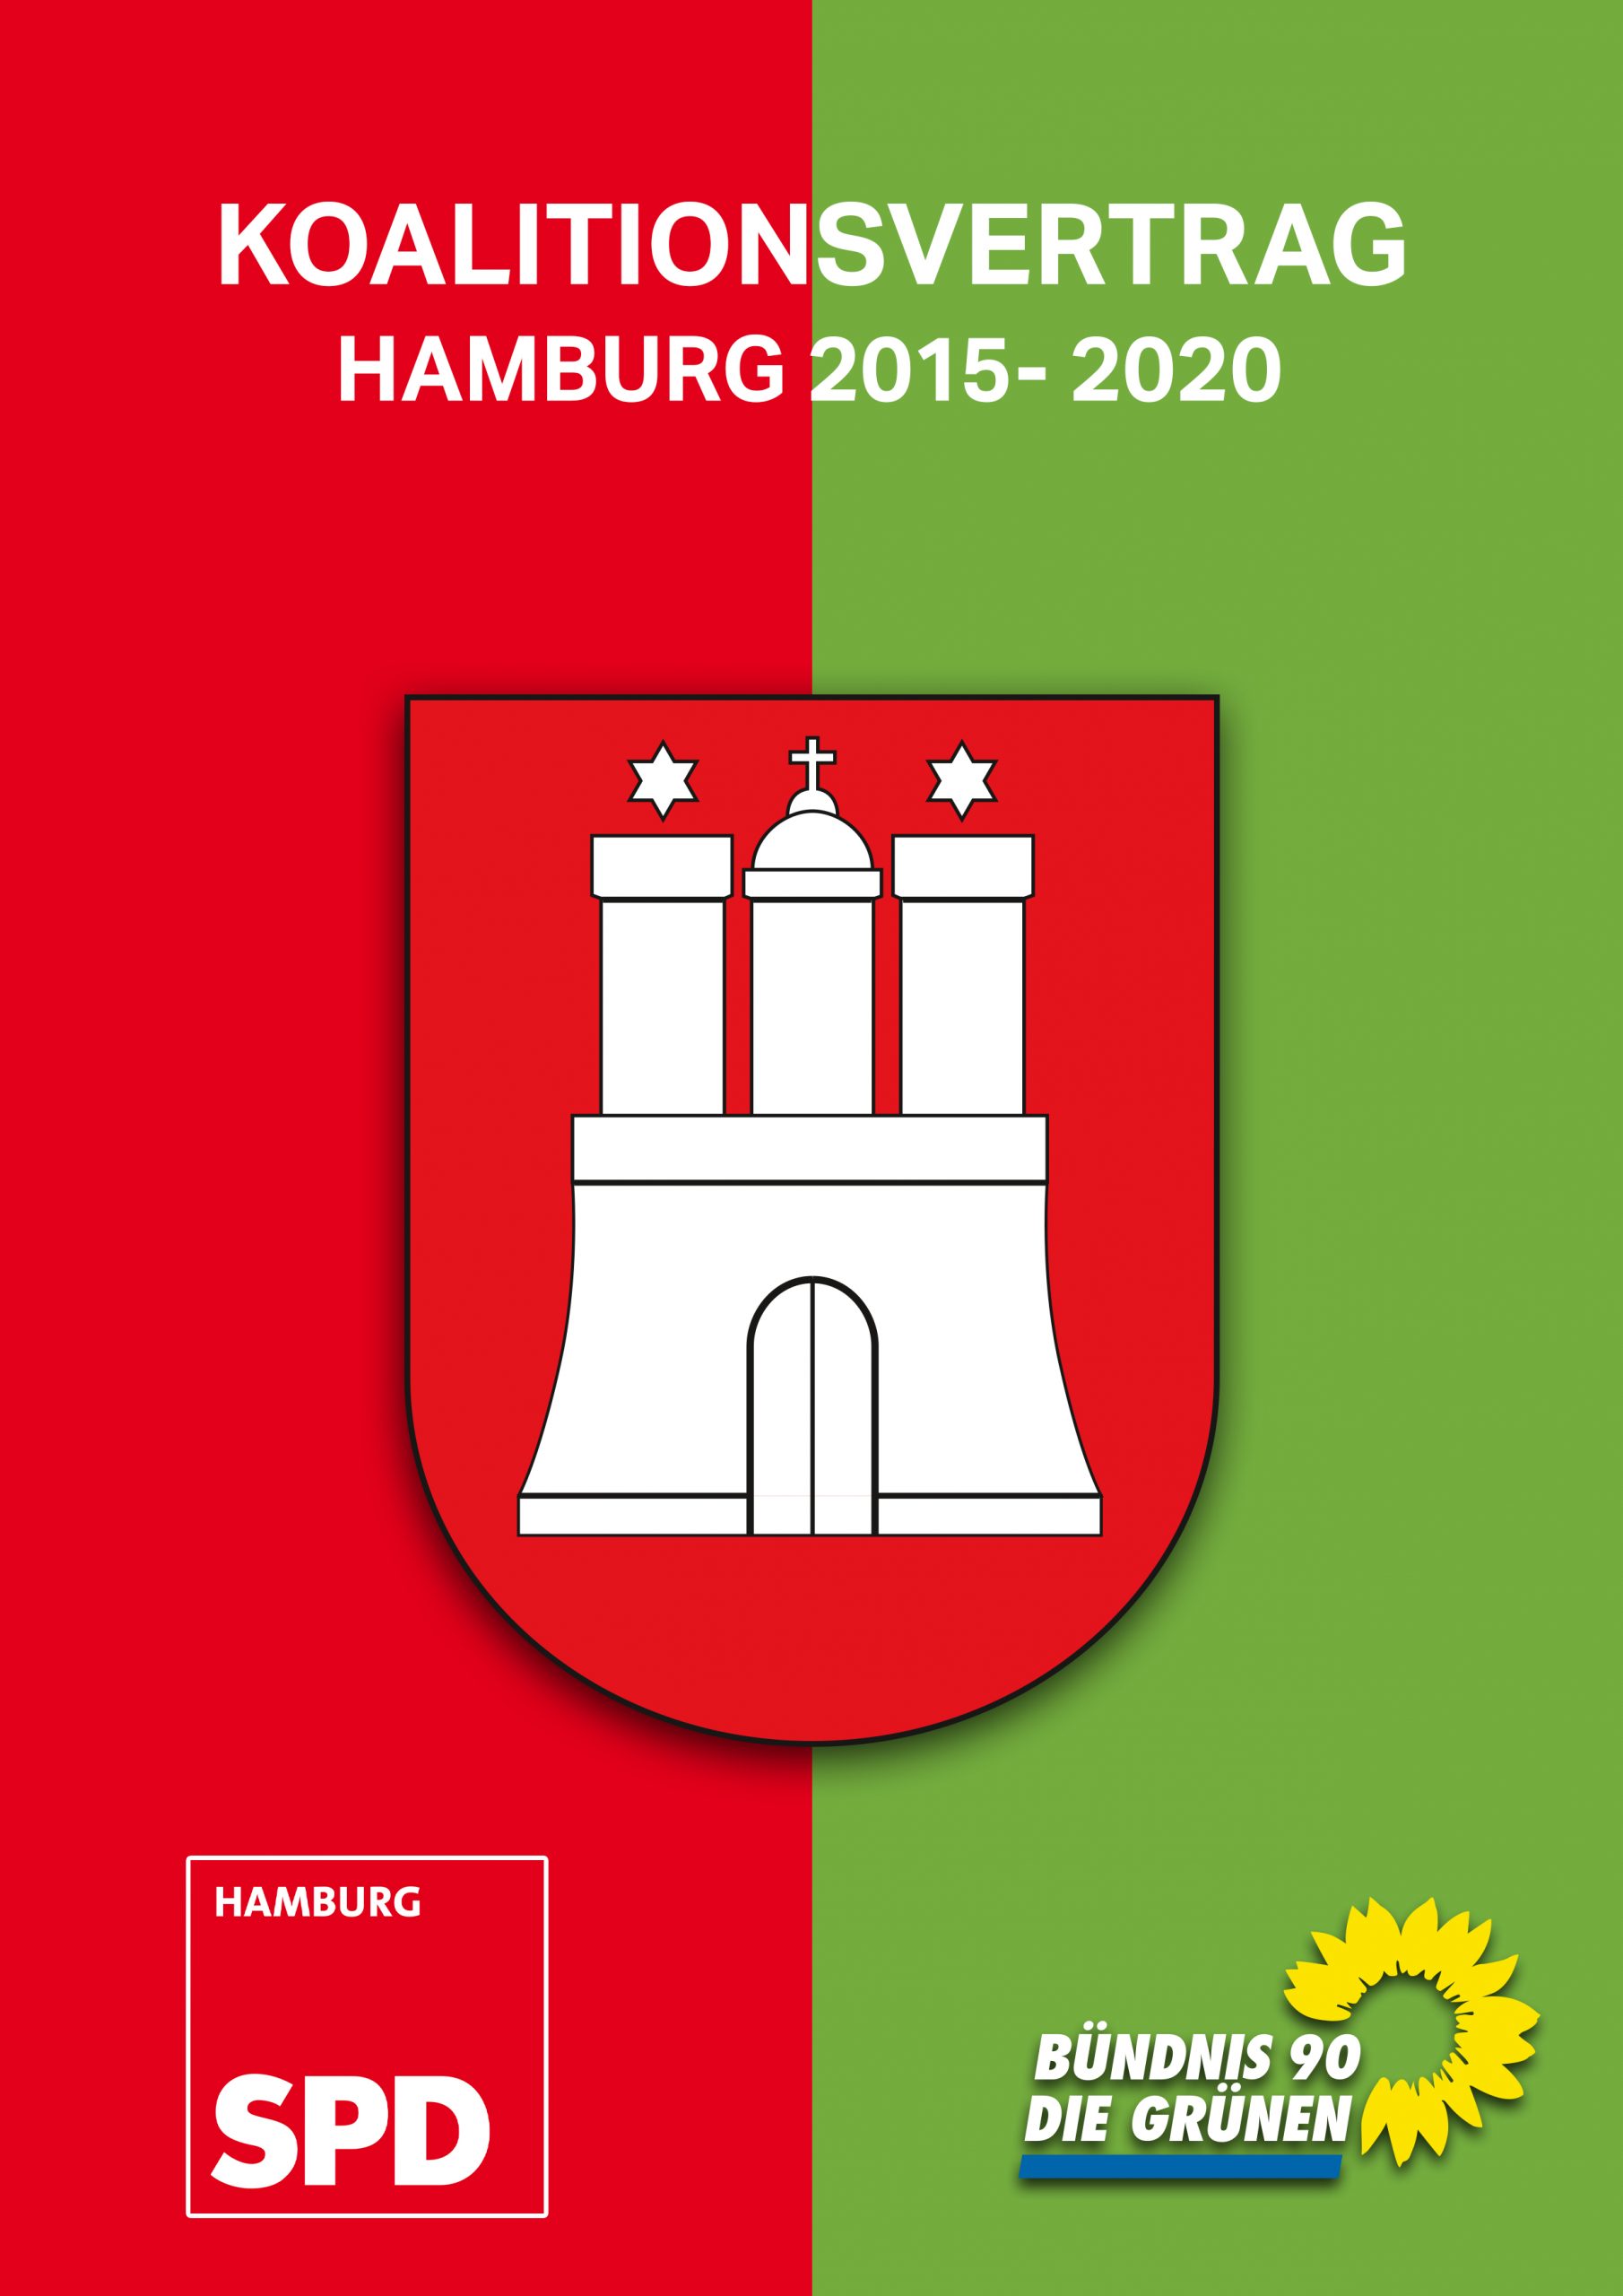 Hamburg: 3 x Cannabis im Koalitionsvertrag von SPD und Grünen